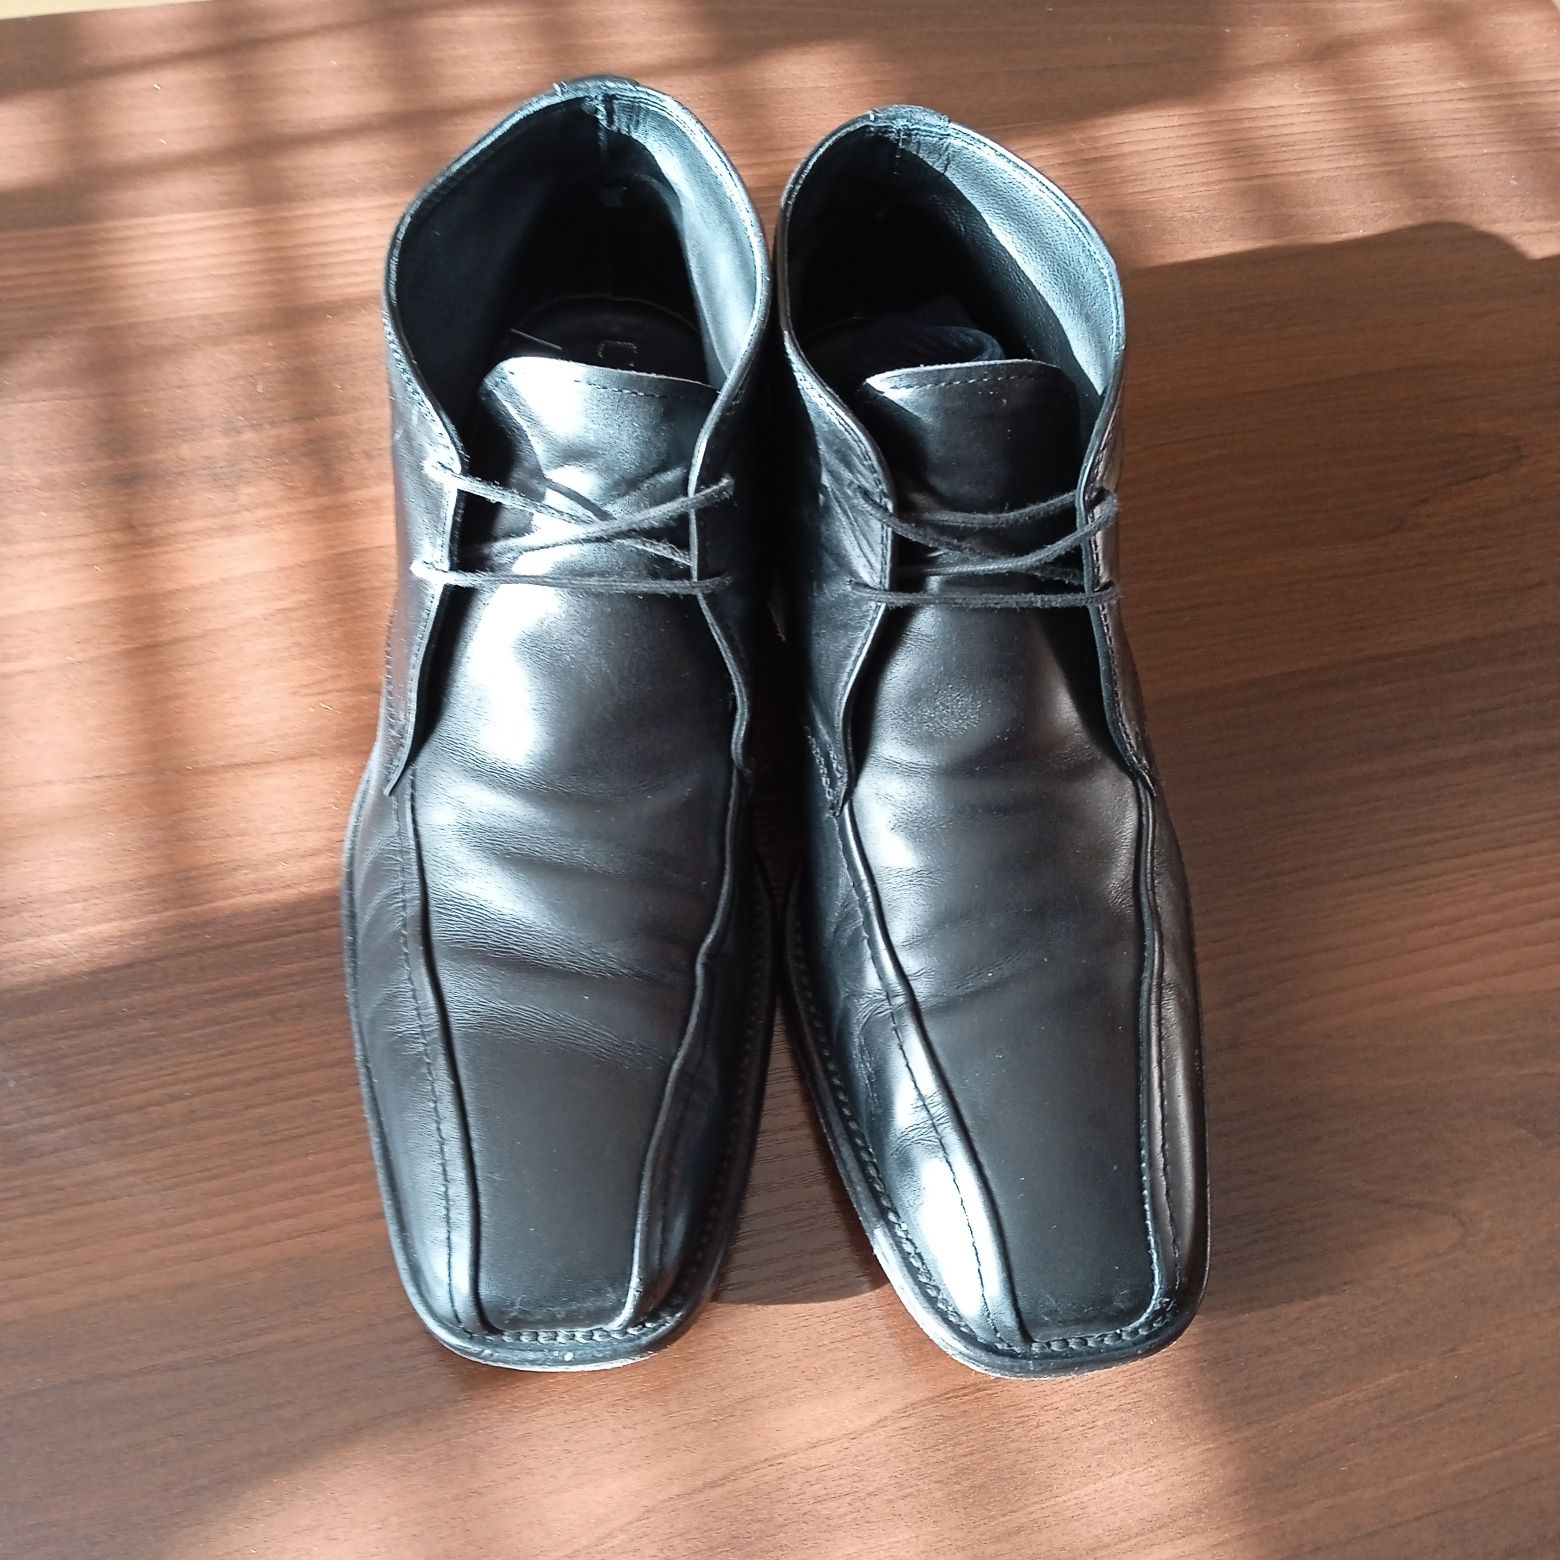 Чоловічі шкіряні чоботи Італія фірми  UGO ARCI